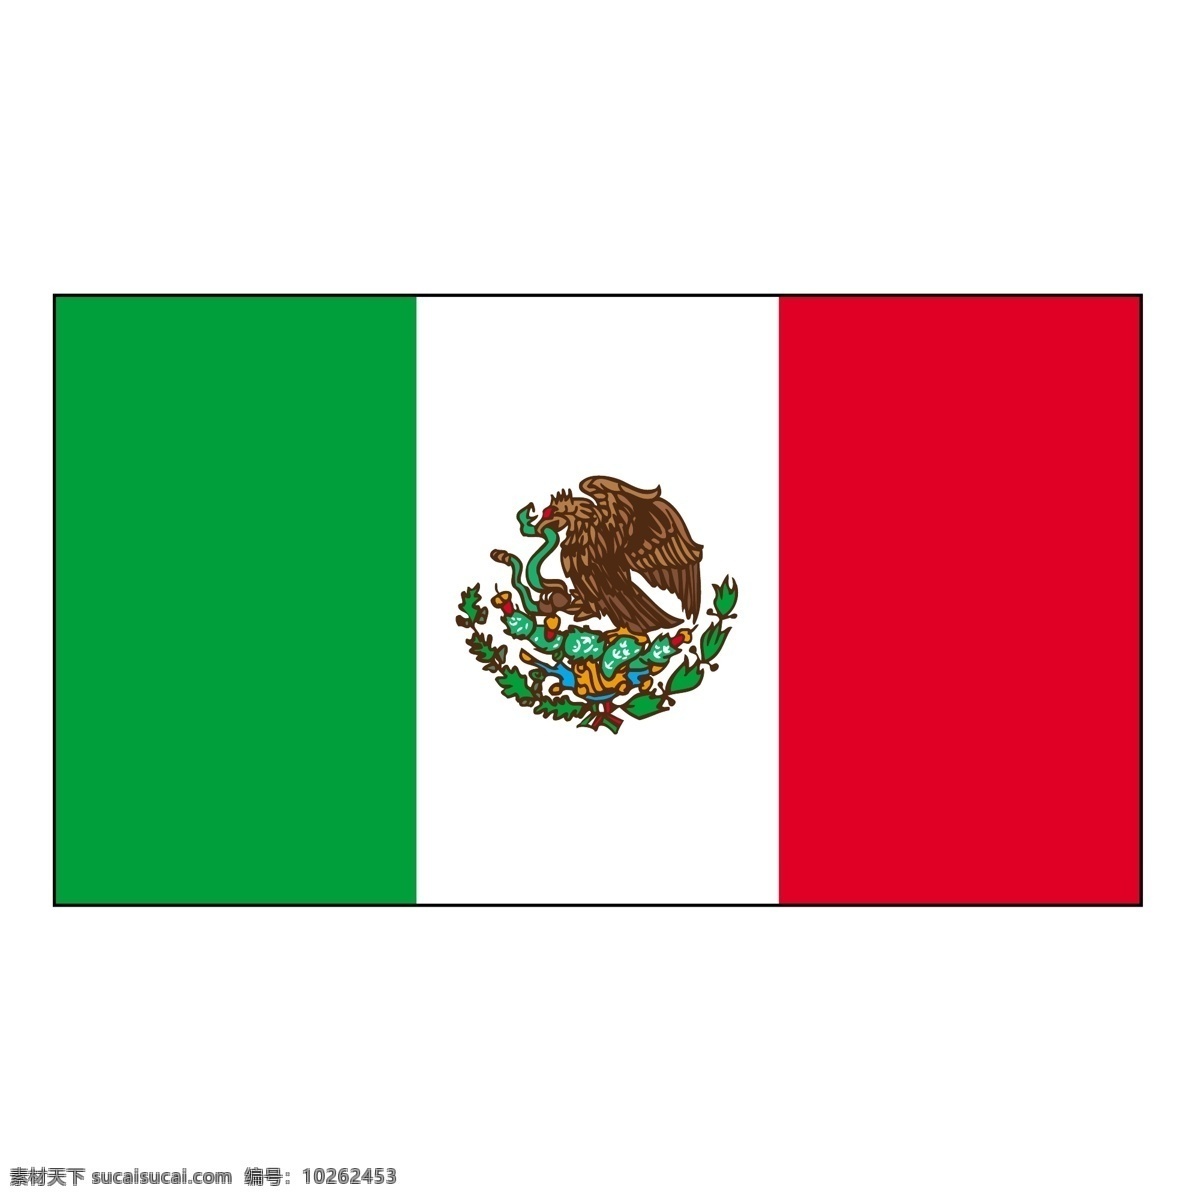 墨西哥0 墨西哥 国旗 矢量 艺术 自由 mapa de墨西哥 墨西哥州 政治 划分 地图 墨西哥自由 标志 hecho 恩 墨西哥向量 美国 标 志在 向量解 矢量图 建筑家居